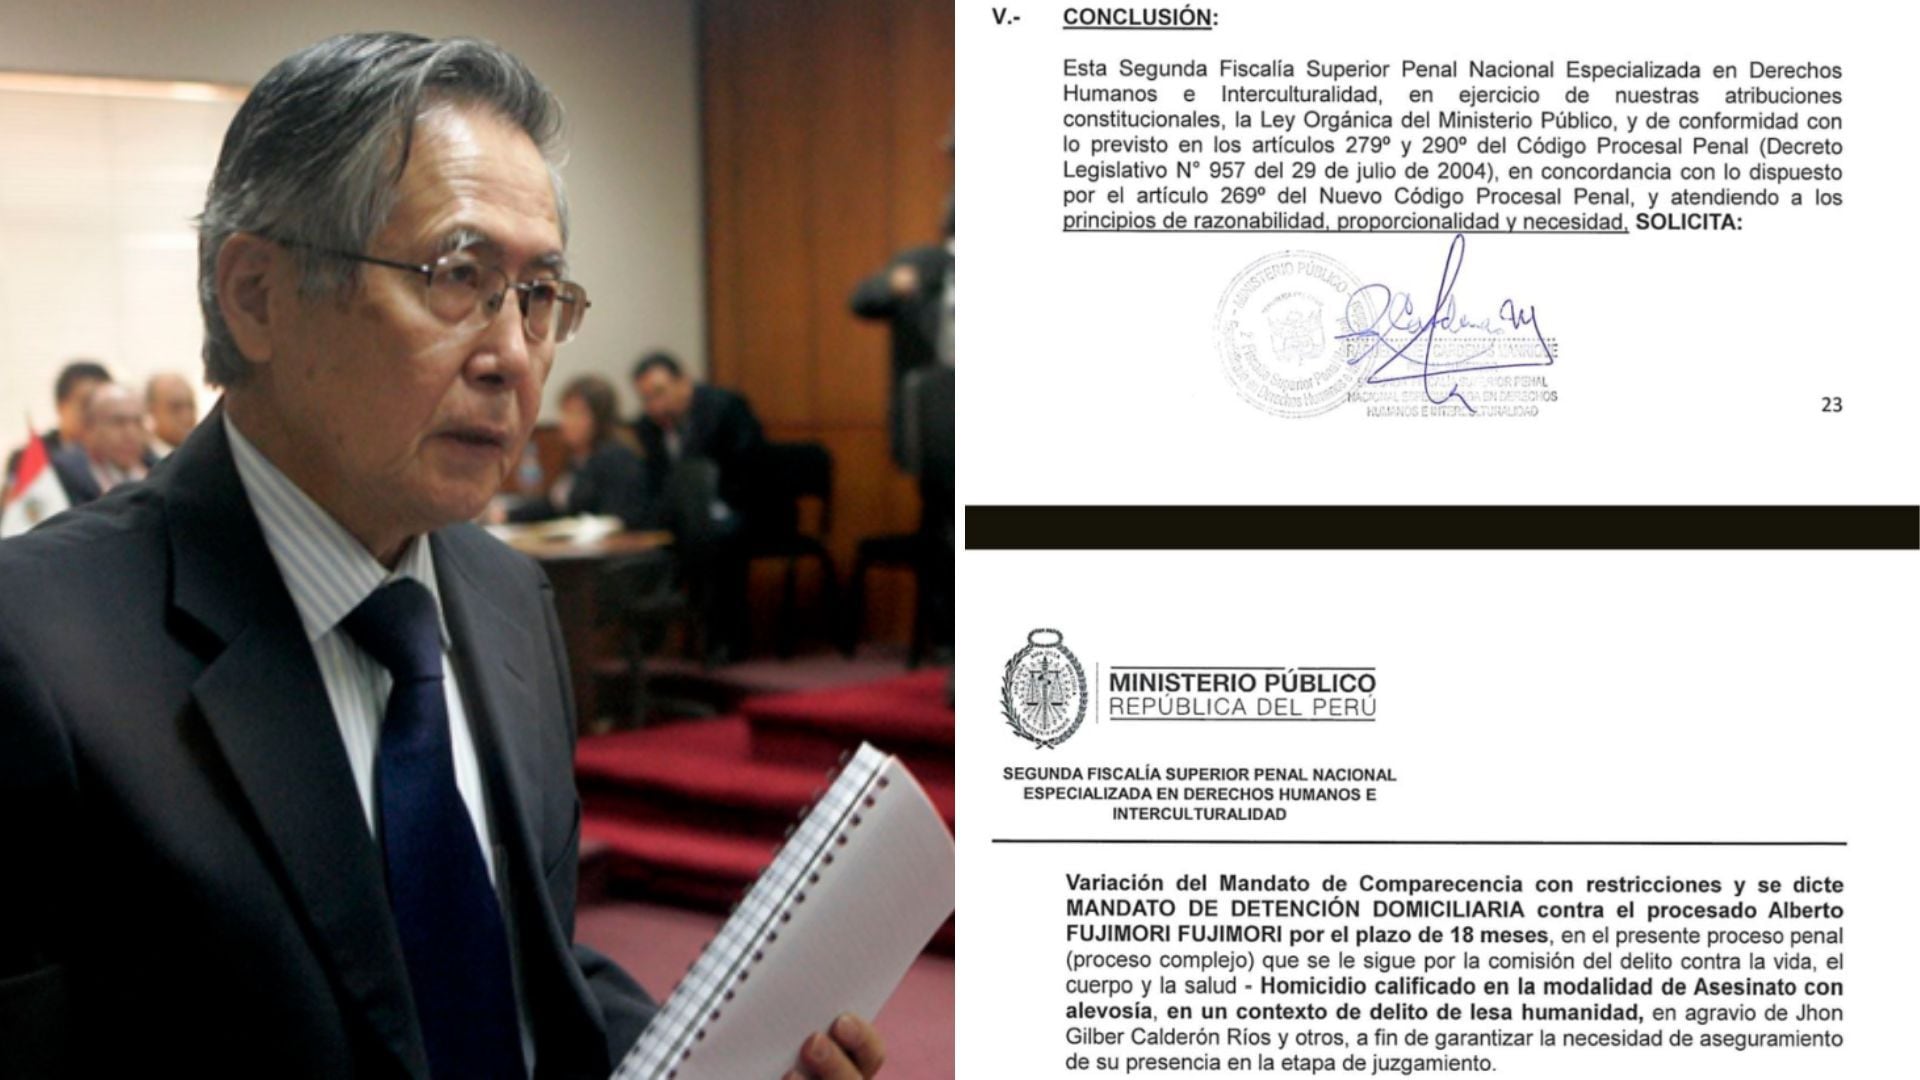 Alberto Fujimori - prision domiciliaria - Caso Pativilca